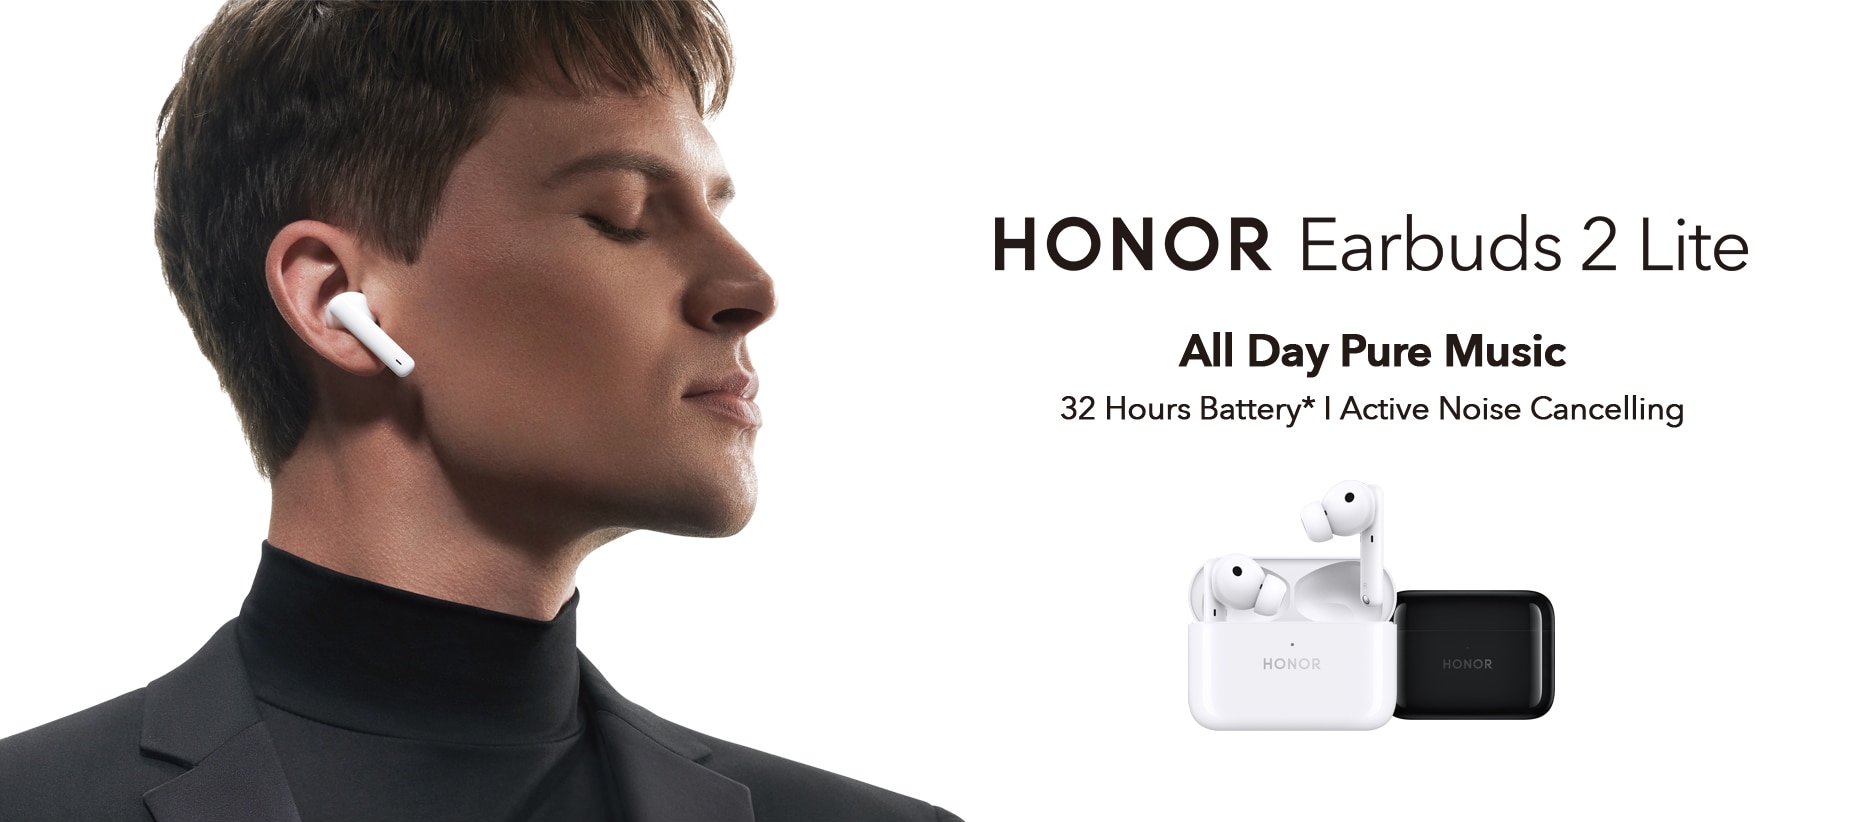 Światowa premiera Honor Earbuds 2 Lite na AliExpress: słuchawki TWS z ANC, Bluetooth 5.2, do 32 godzin pracy na baterii i promocyjną ceną 55 dolarów